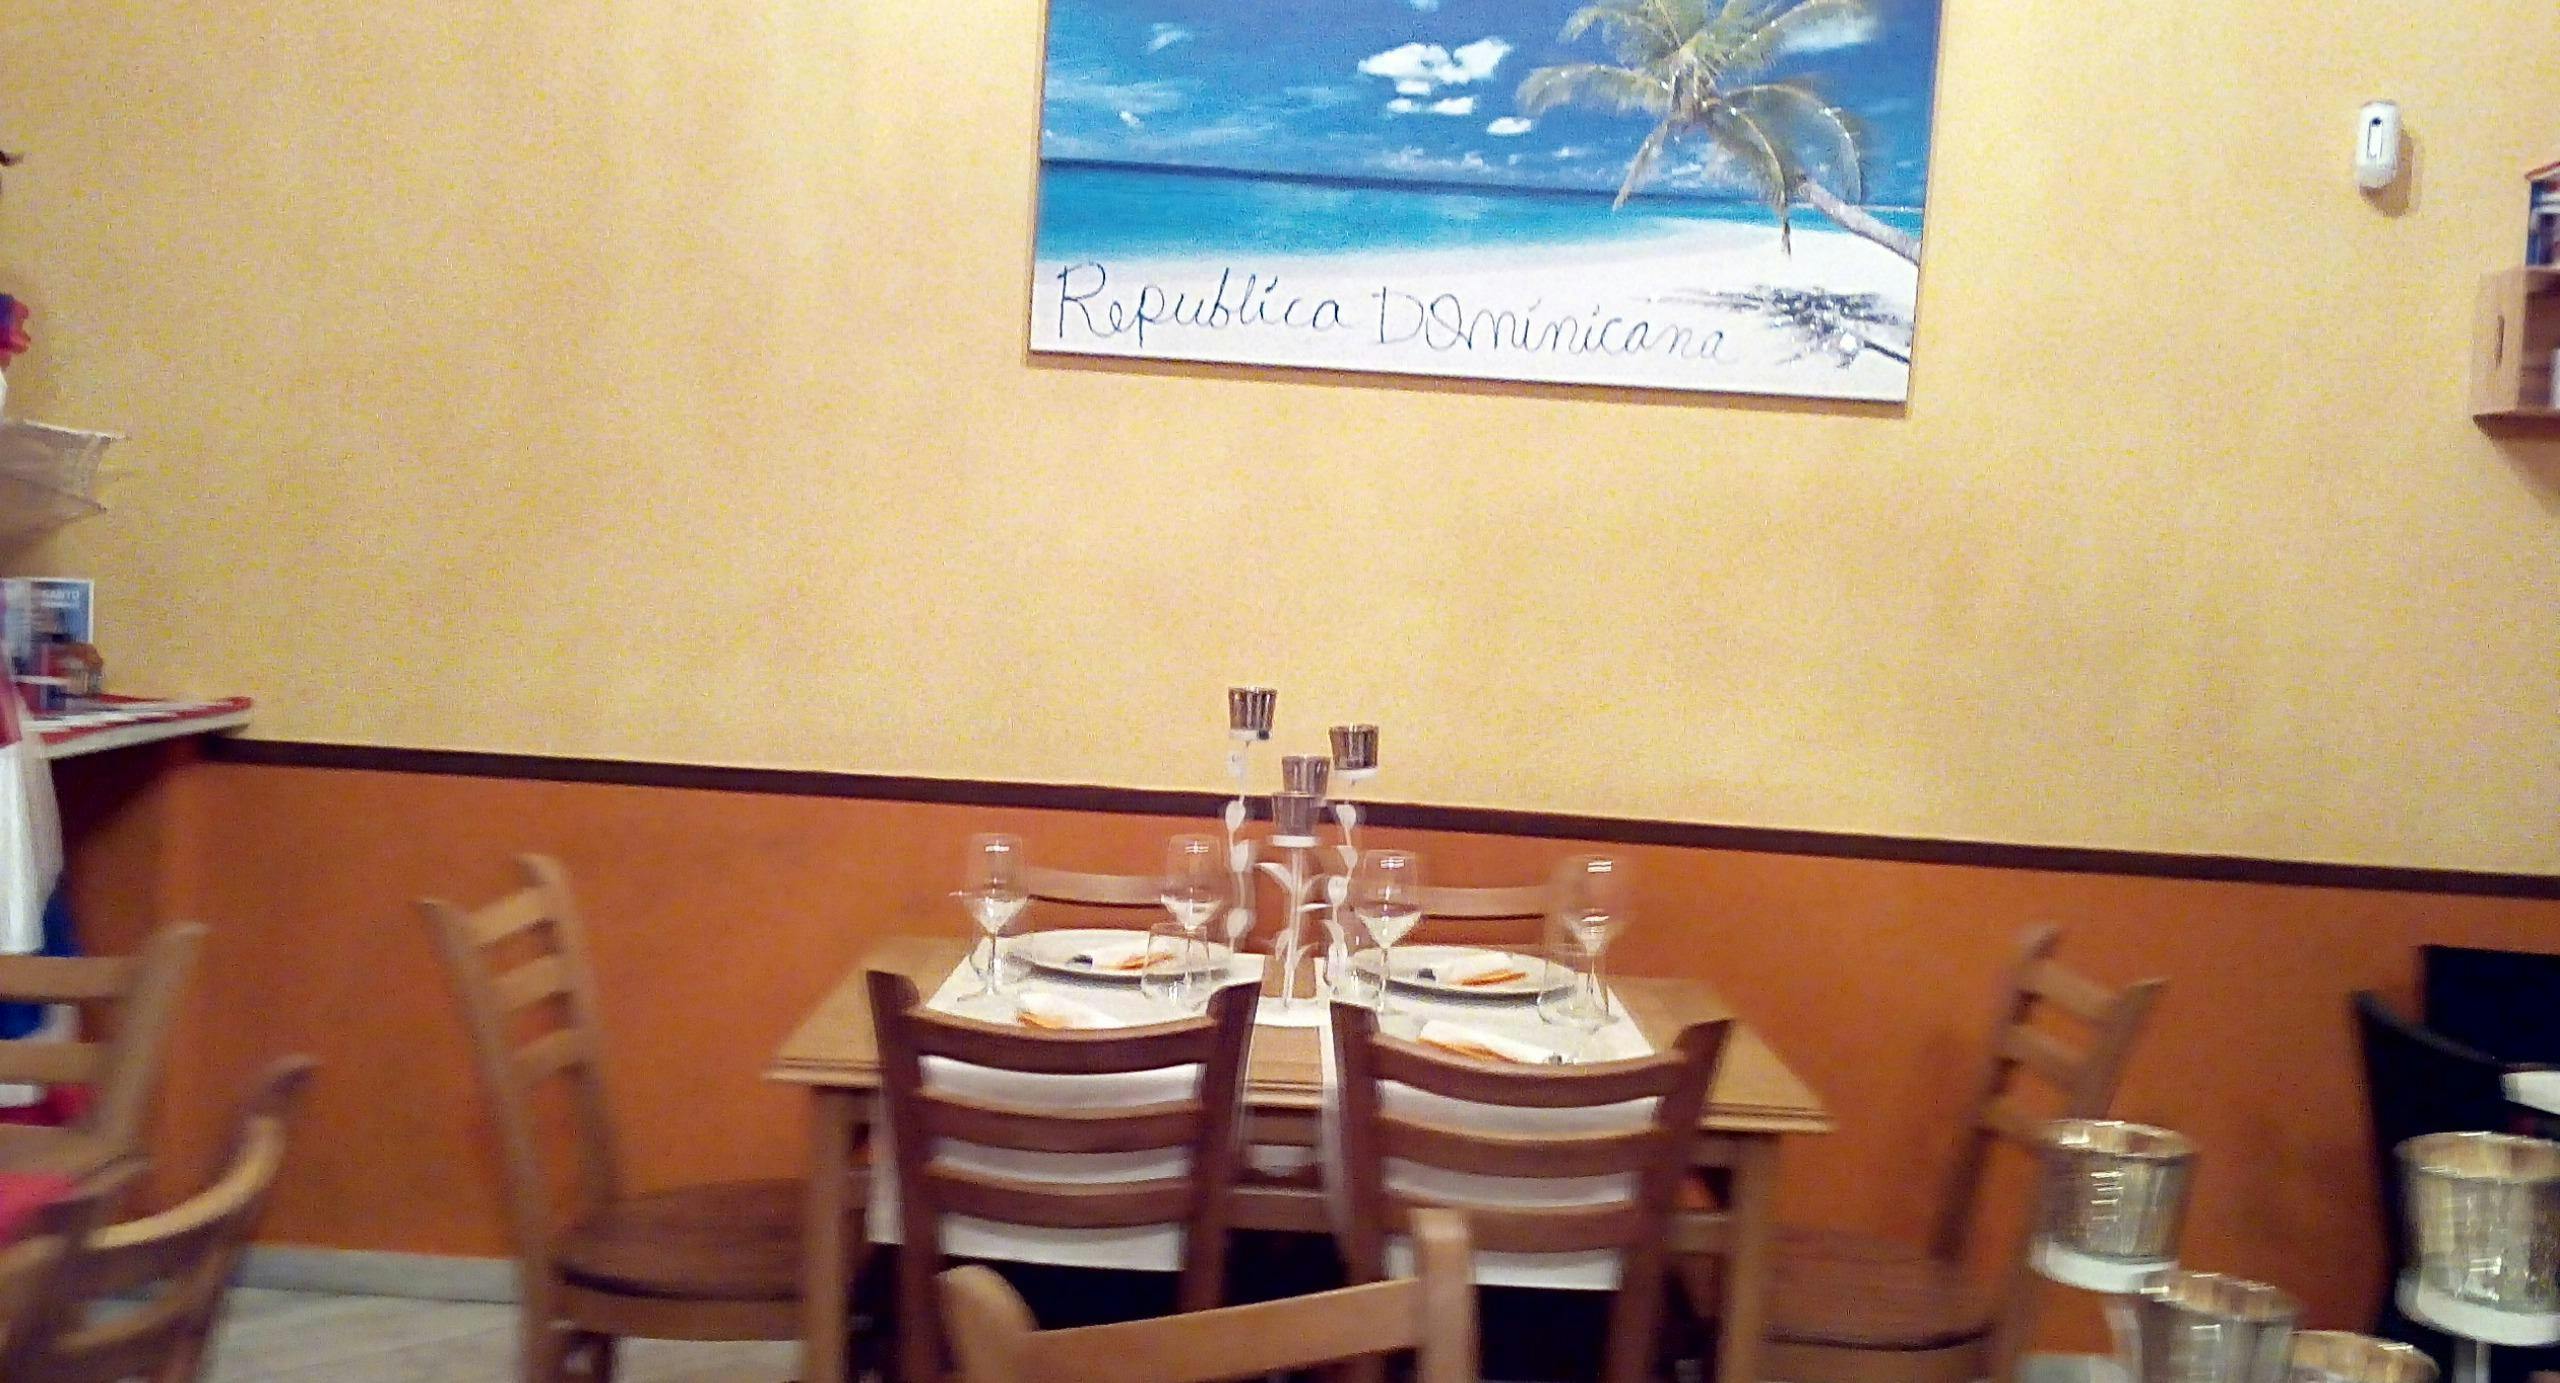 Photo of restaurant La Casita Dominicana in Prenestino, Rome